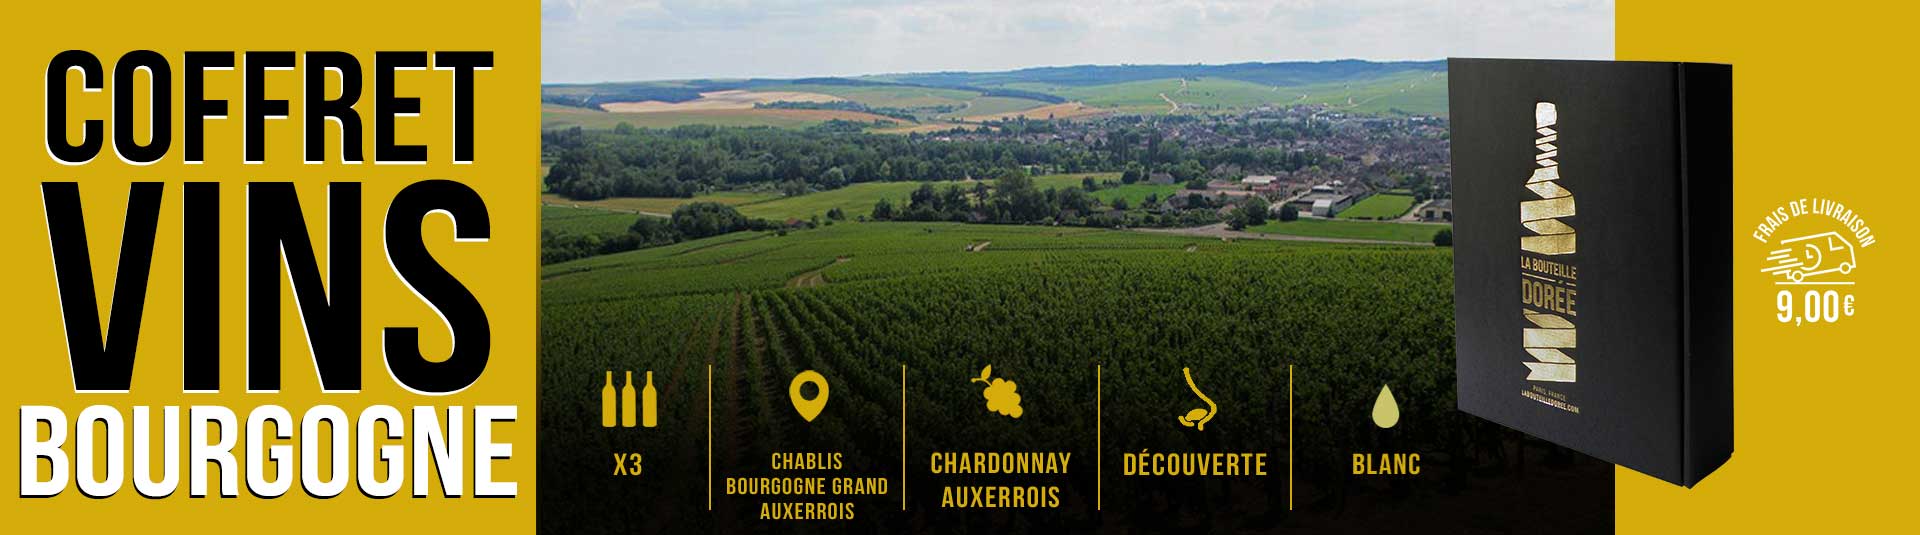 Coffret vin blanc Bourgogne Chardonnay Auxerrois